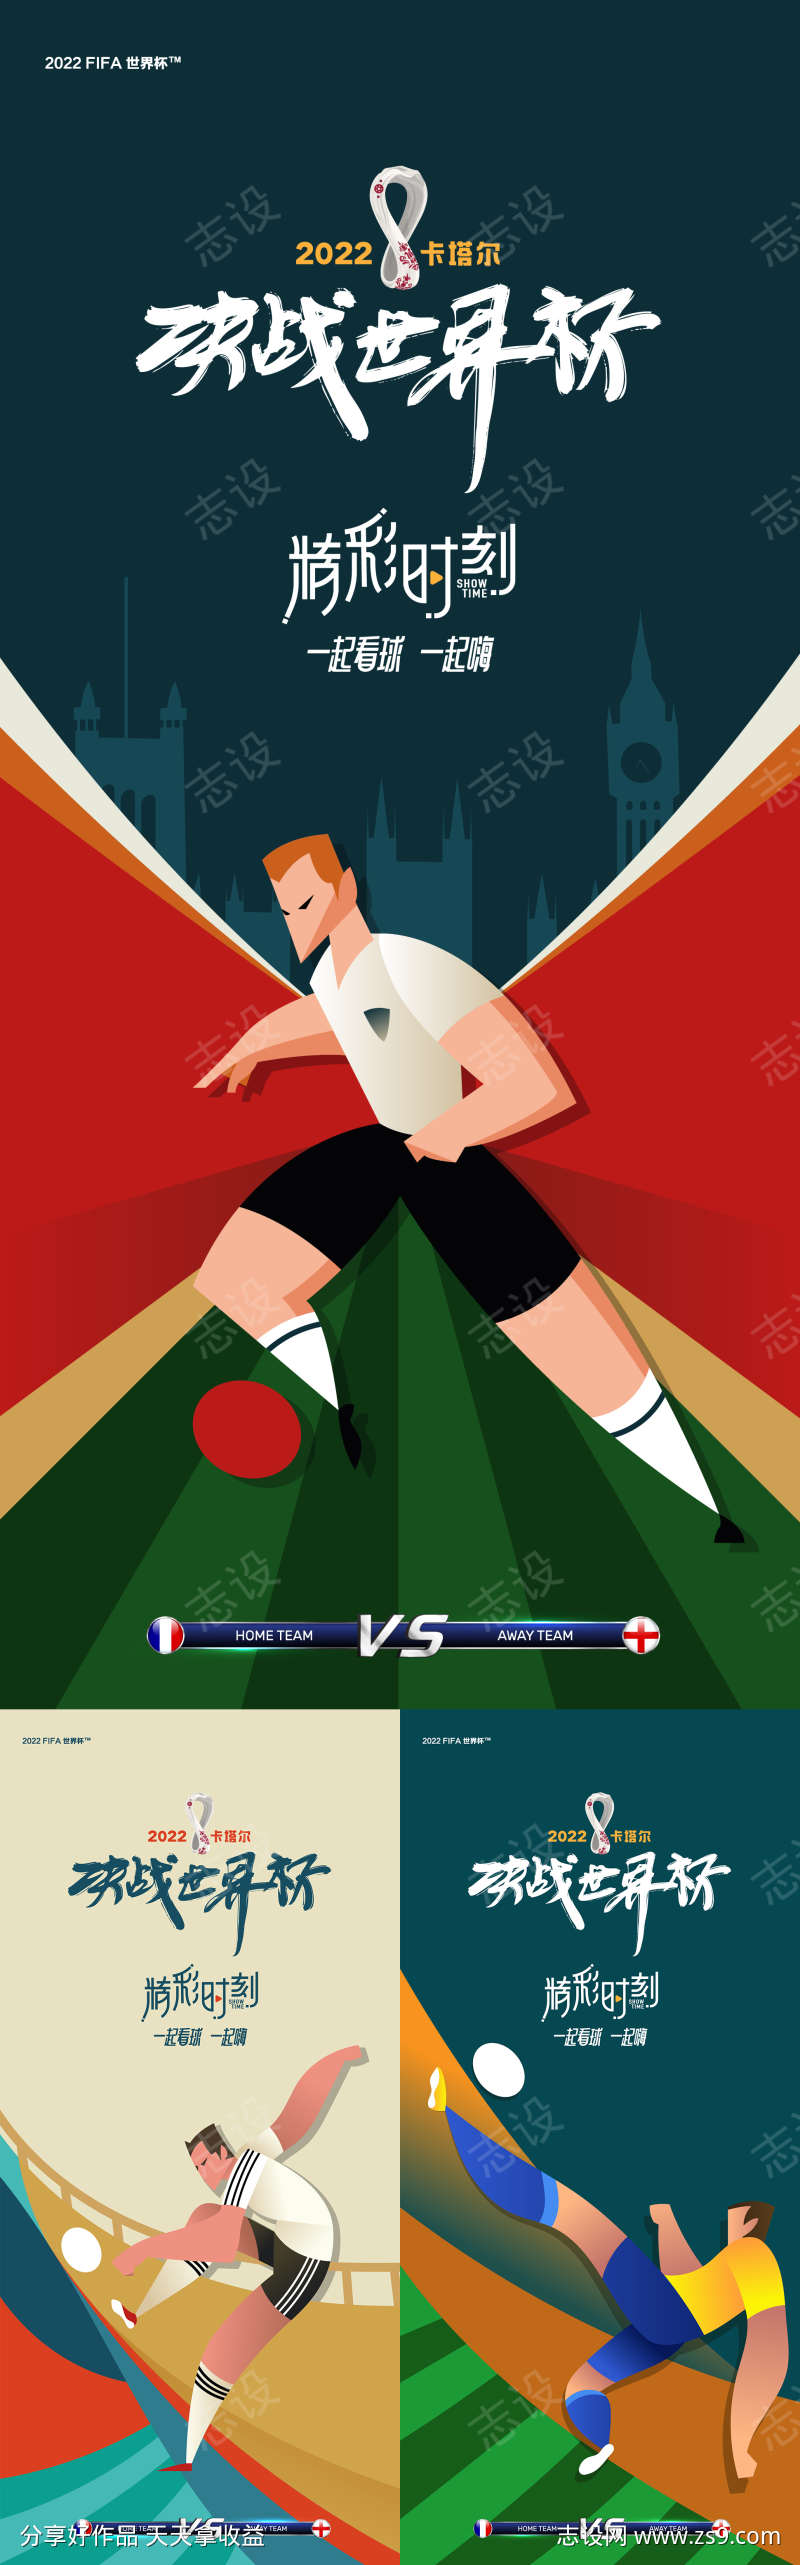 世界杯插画系列海报